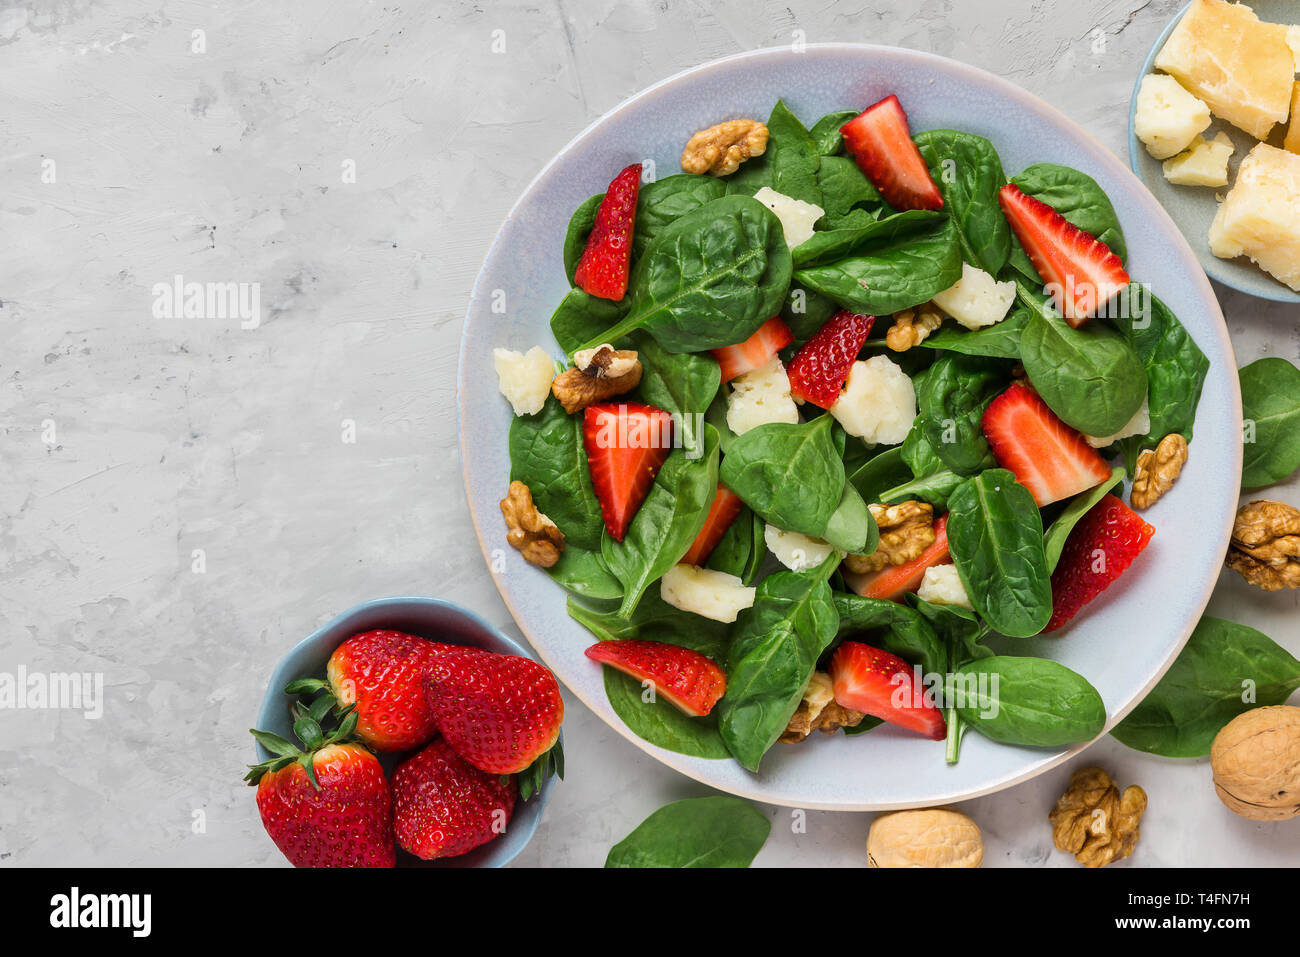 Avec salade de fraises, épinards, parmesan et noix sur fond de béton. alimentation saine alimentation. top view with copy space Banque D'Images